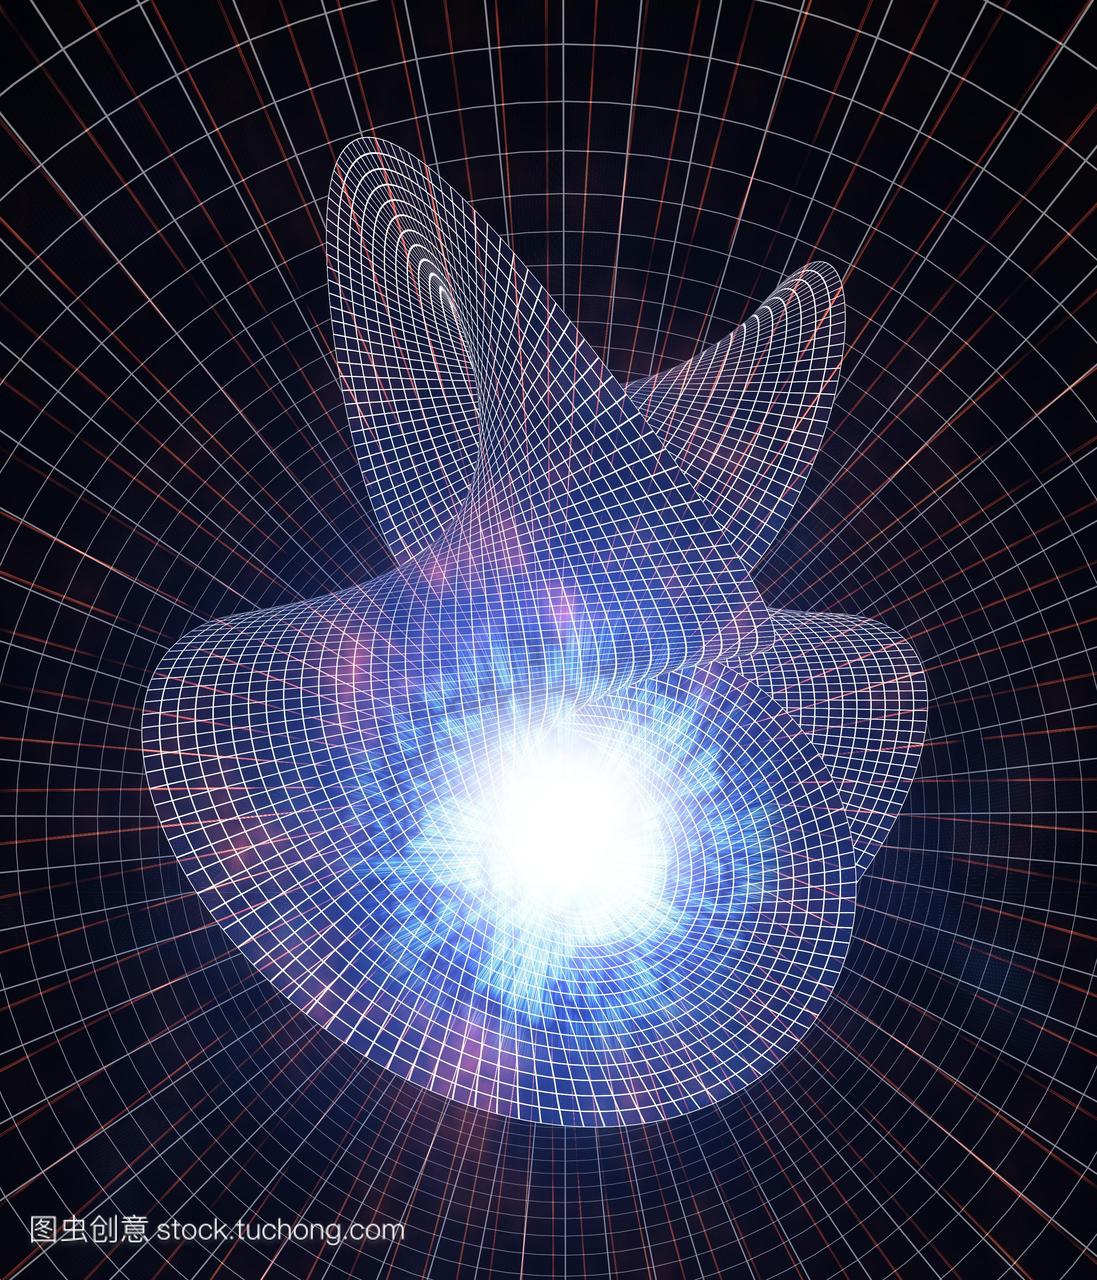 扭曲时空弯曲的概念电脑绘图网格线在一个天体